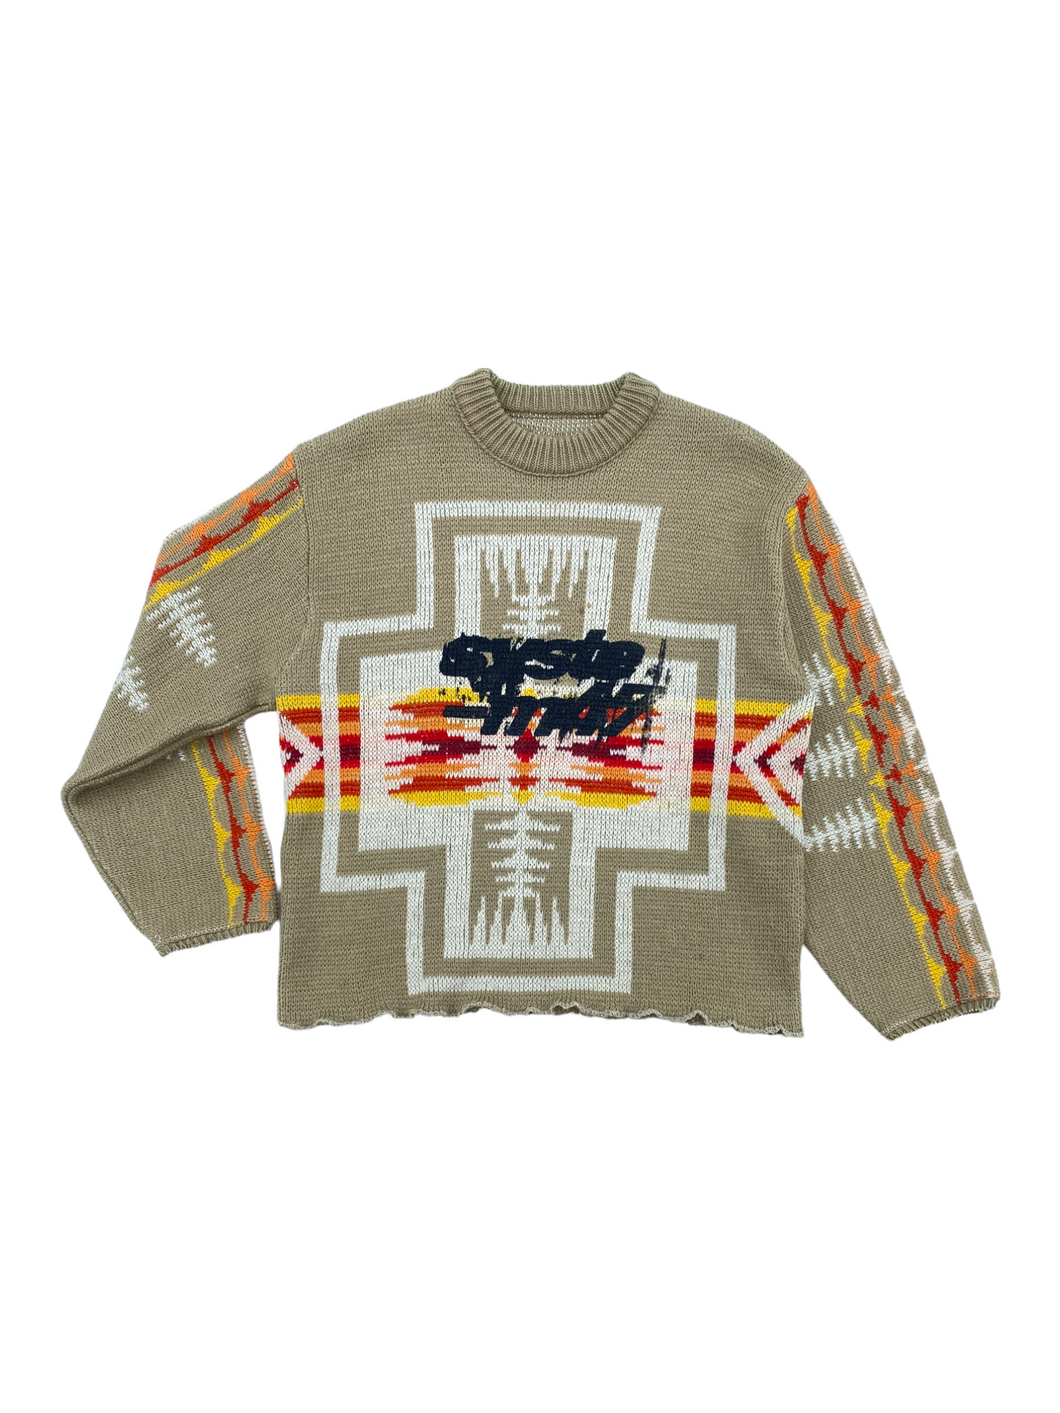 pendelton wool sweater